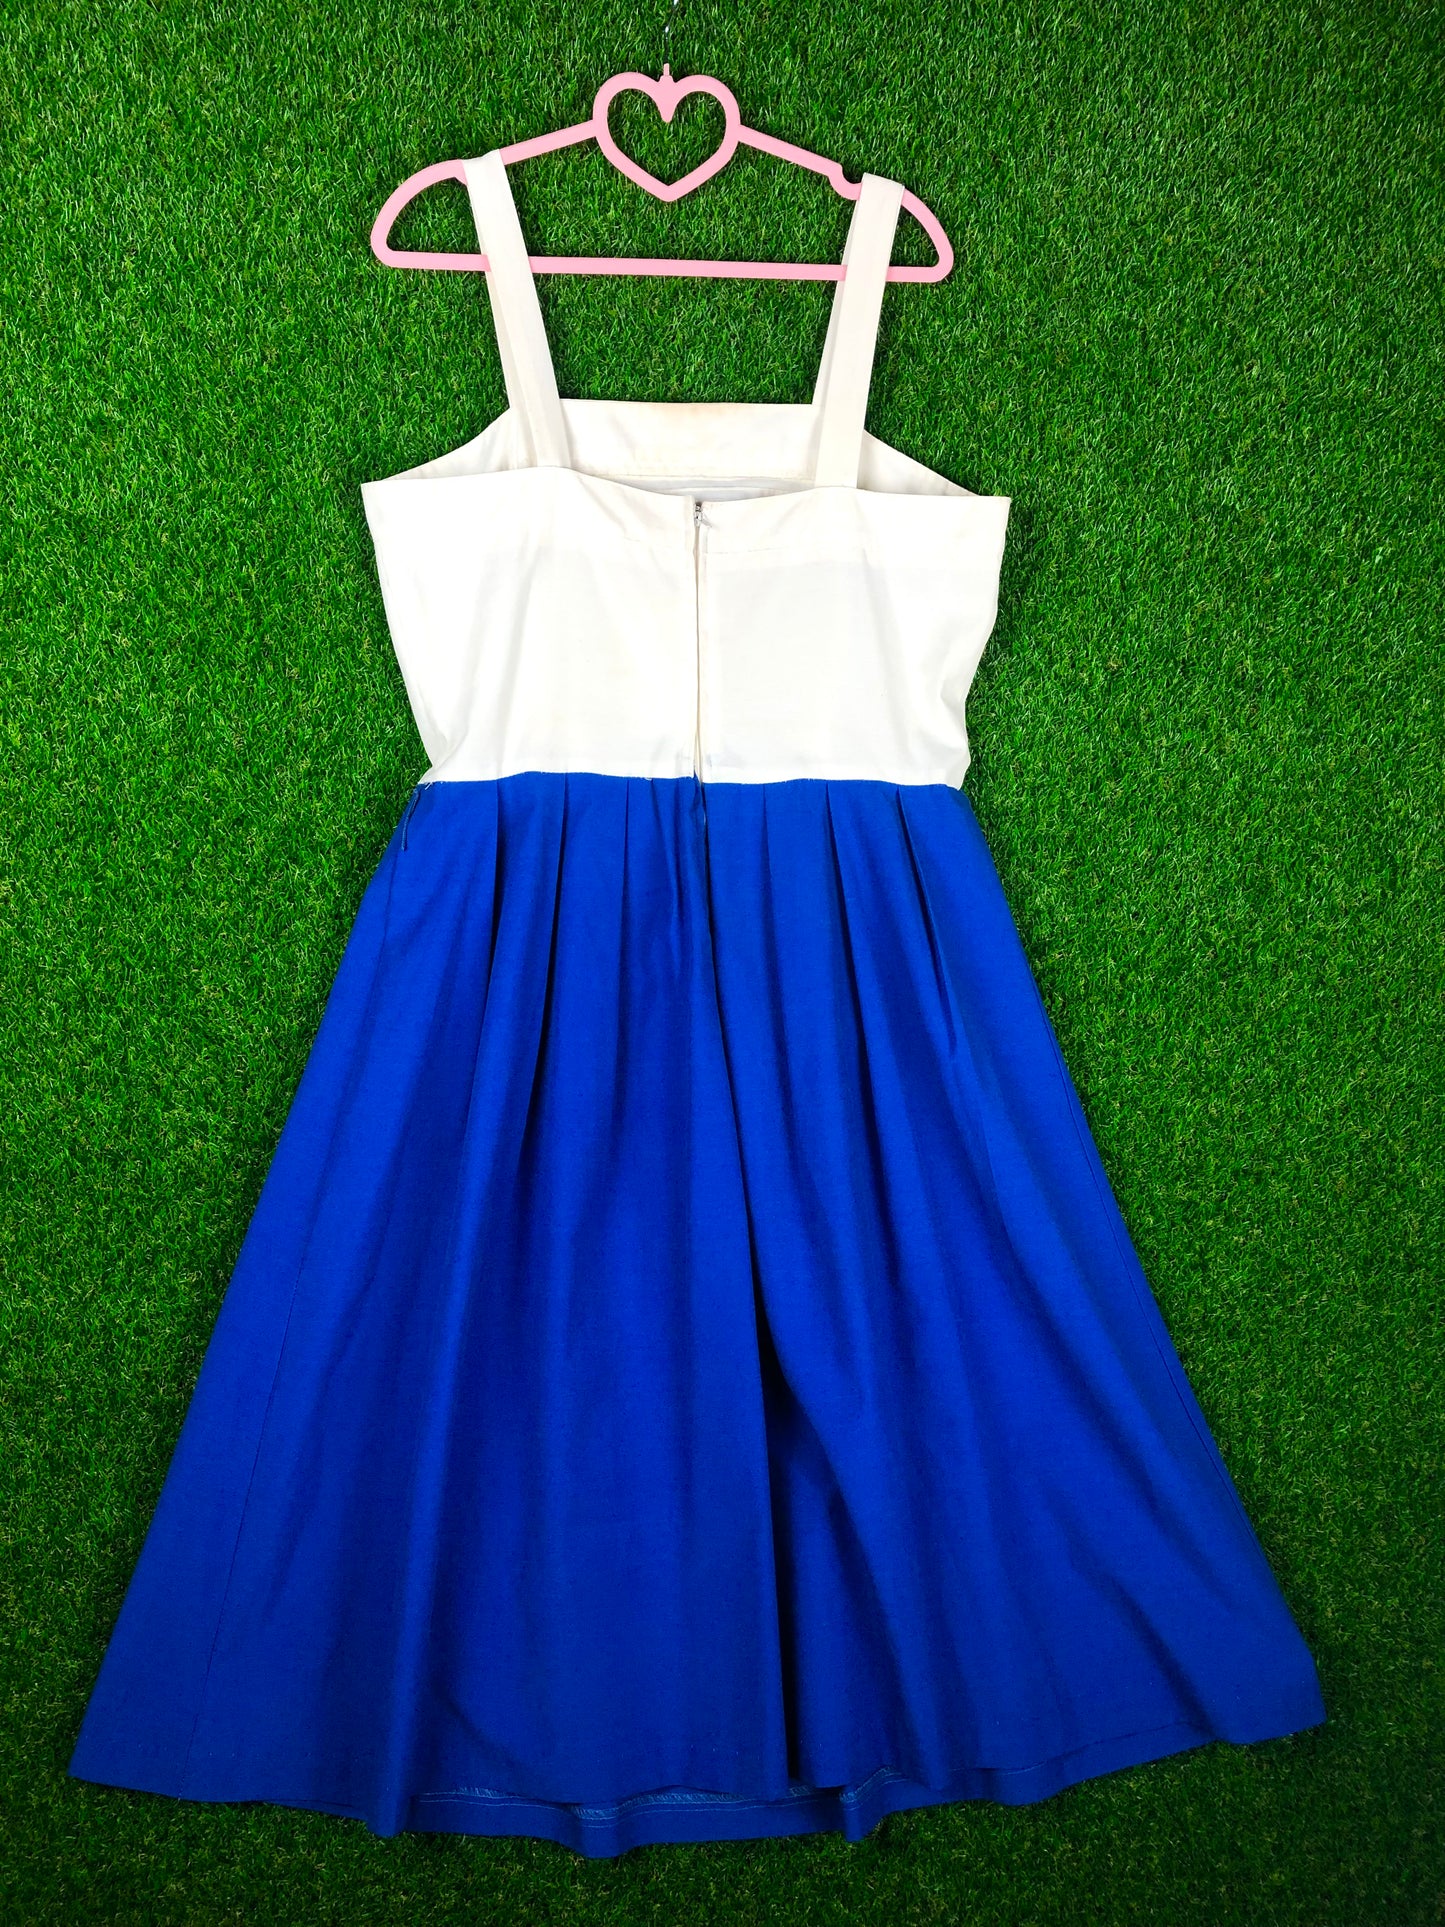 1980's Light Blue and White Summer Dress